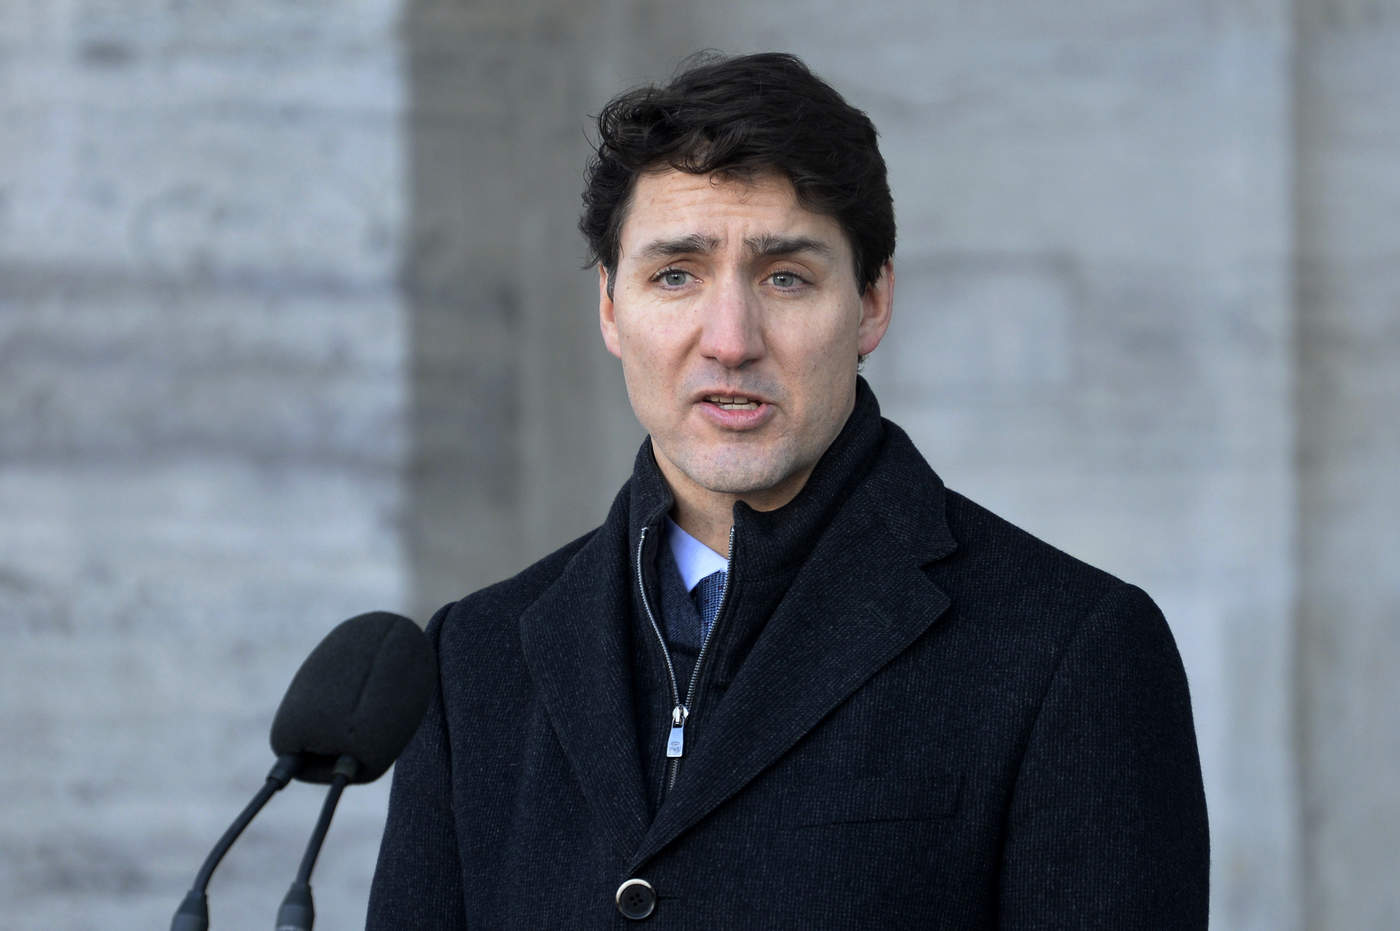 Condena a muerte de canadiense en China es arbitraria: Trudeau. Noticias en tiempo real